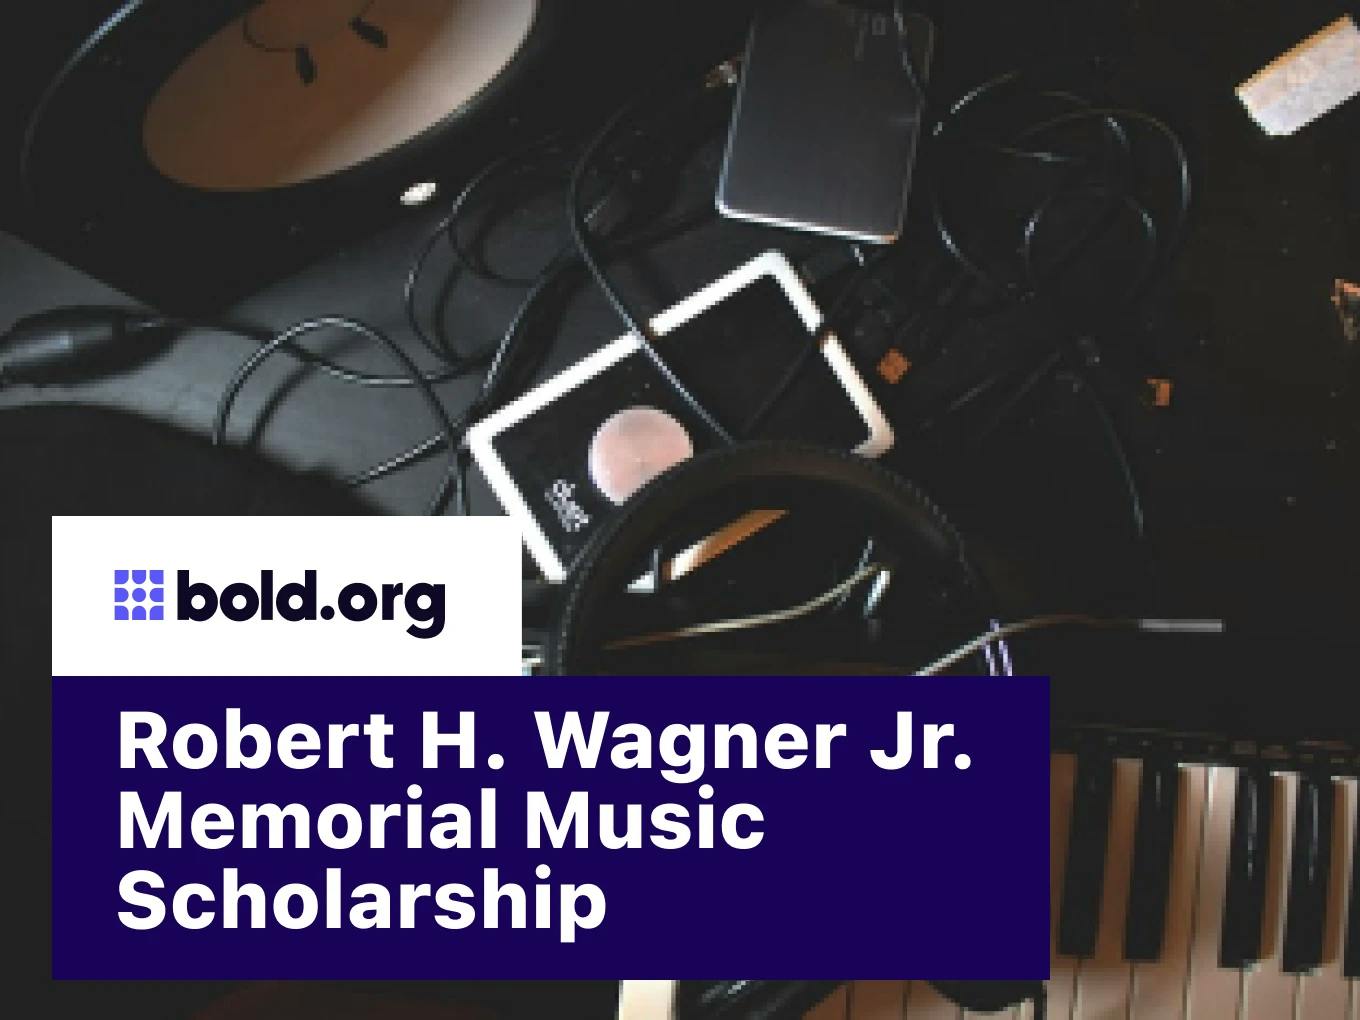 Robert H. Wagner Jr. Memorial Music Scholarship